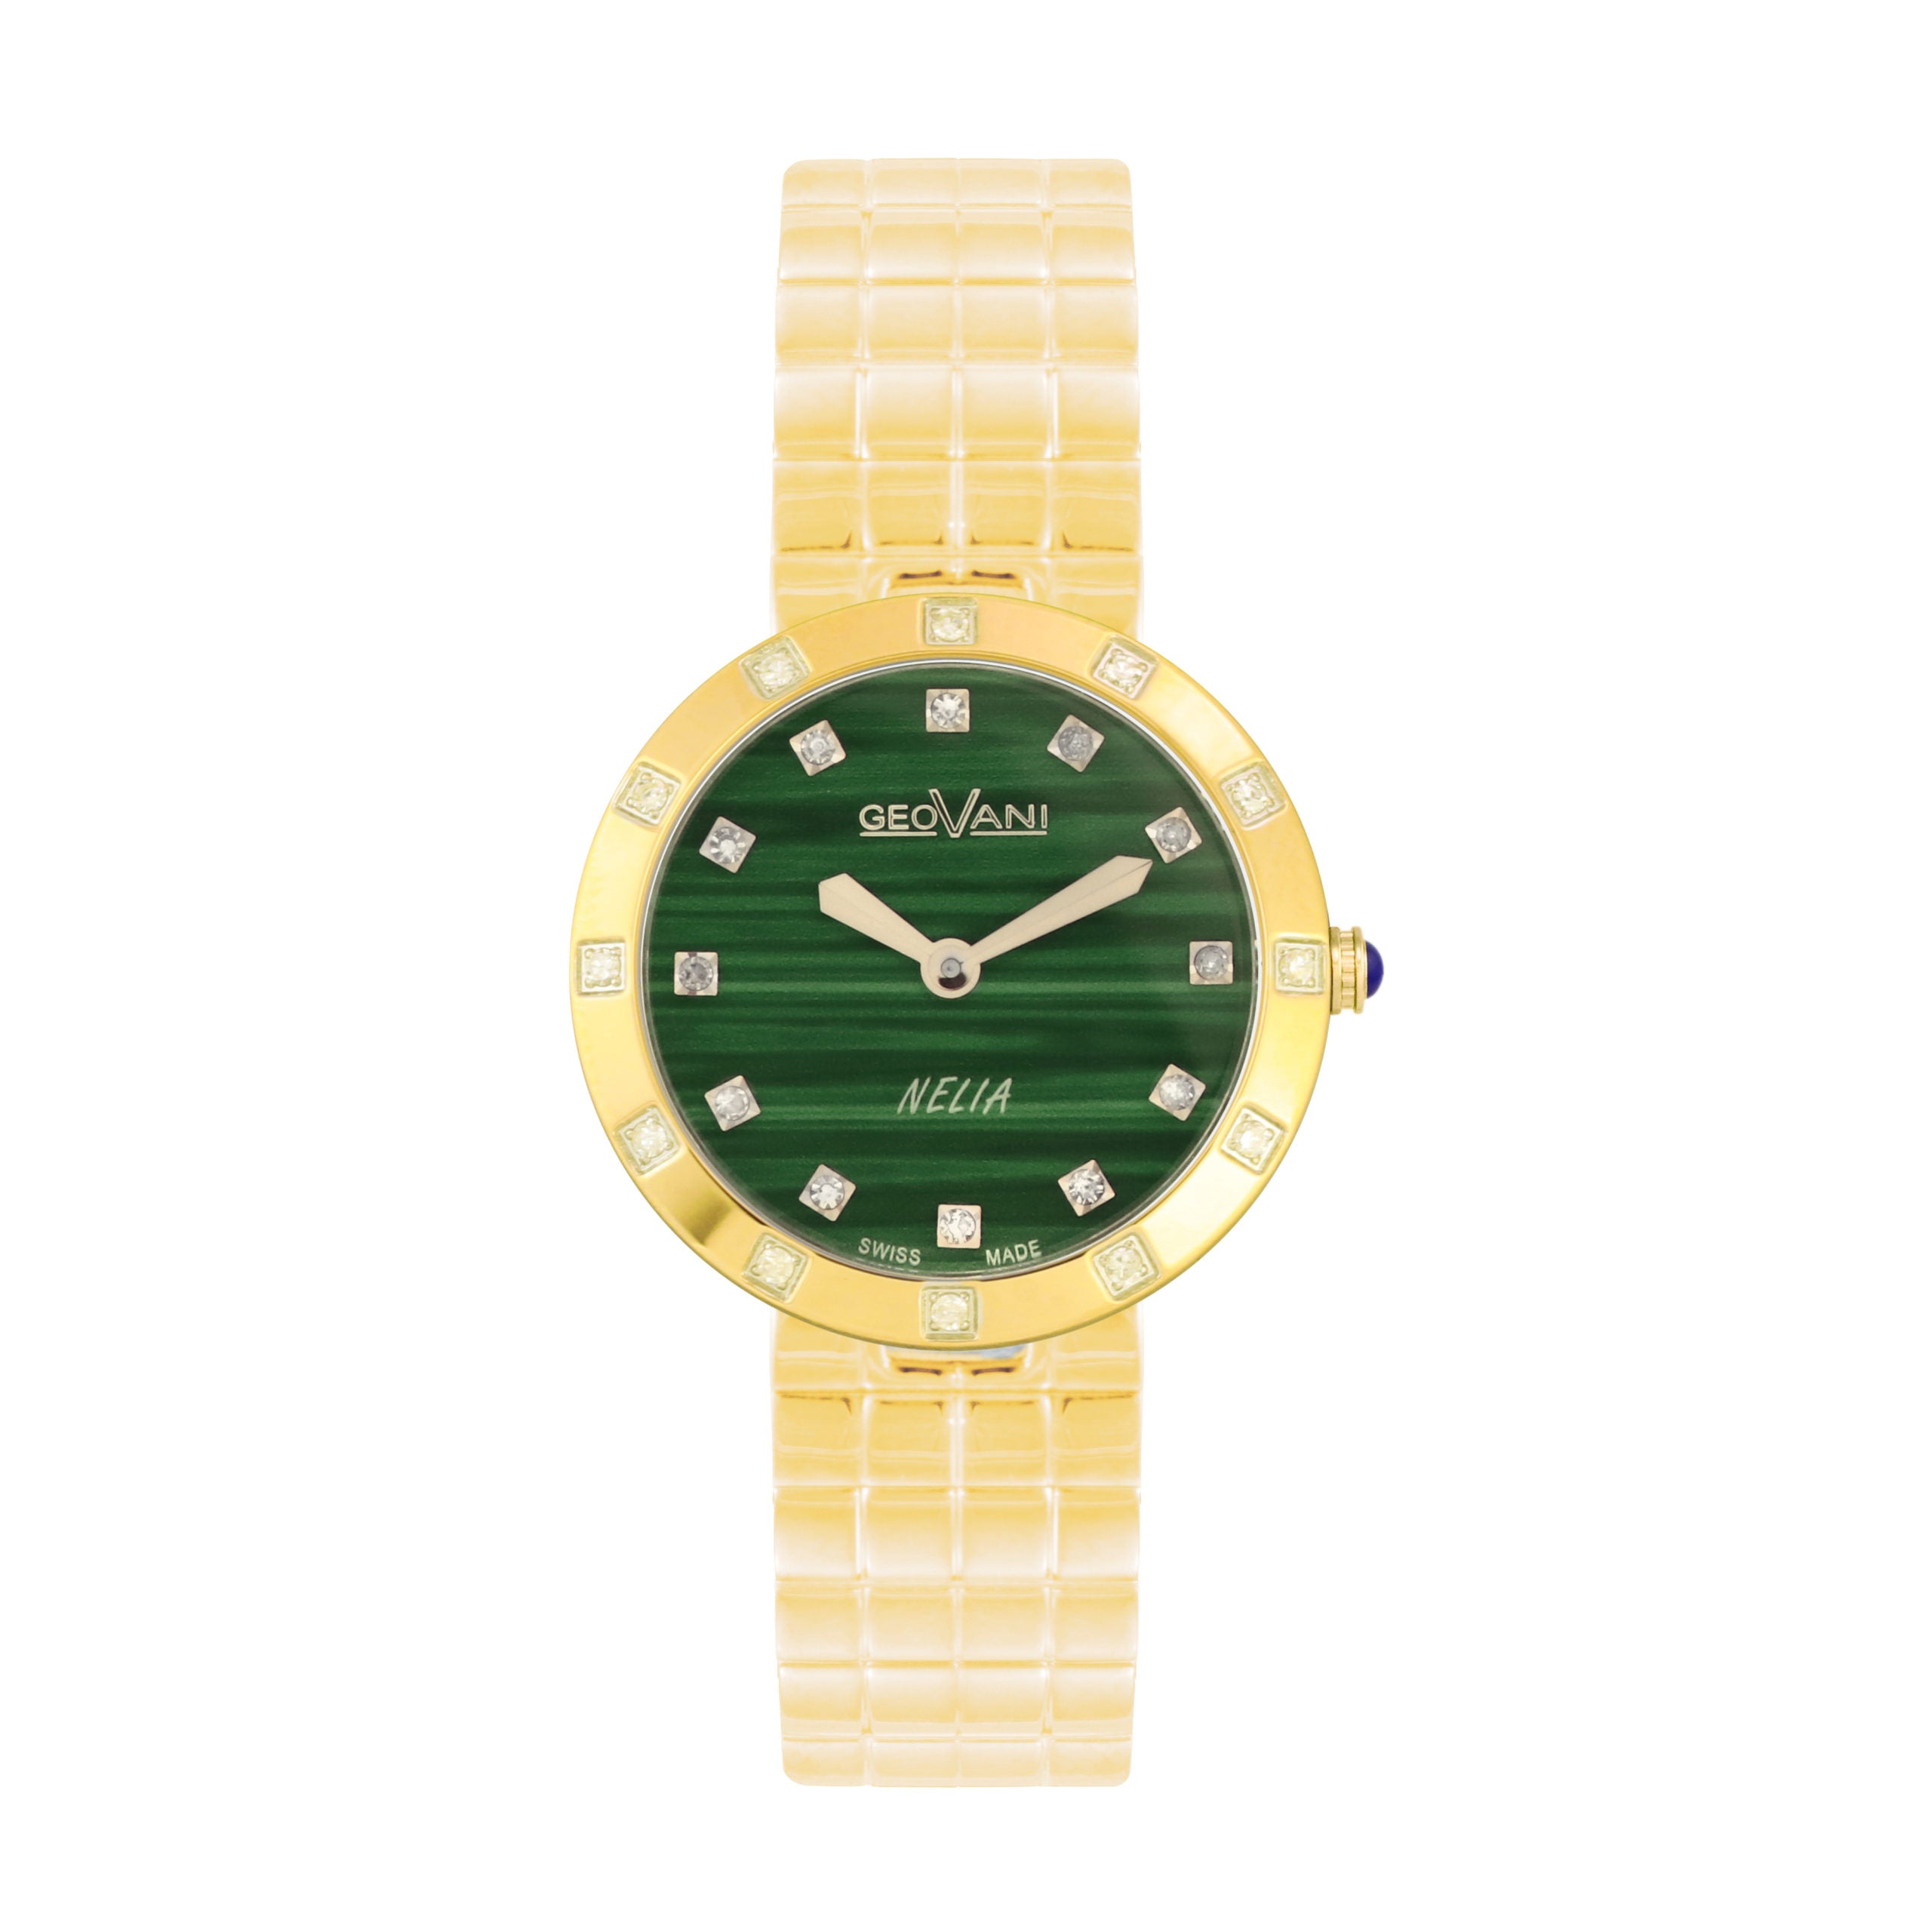 Giovanni Women's Swiss Quartz Watch with Green Dial - GEO-0030